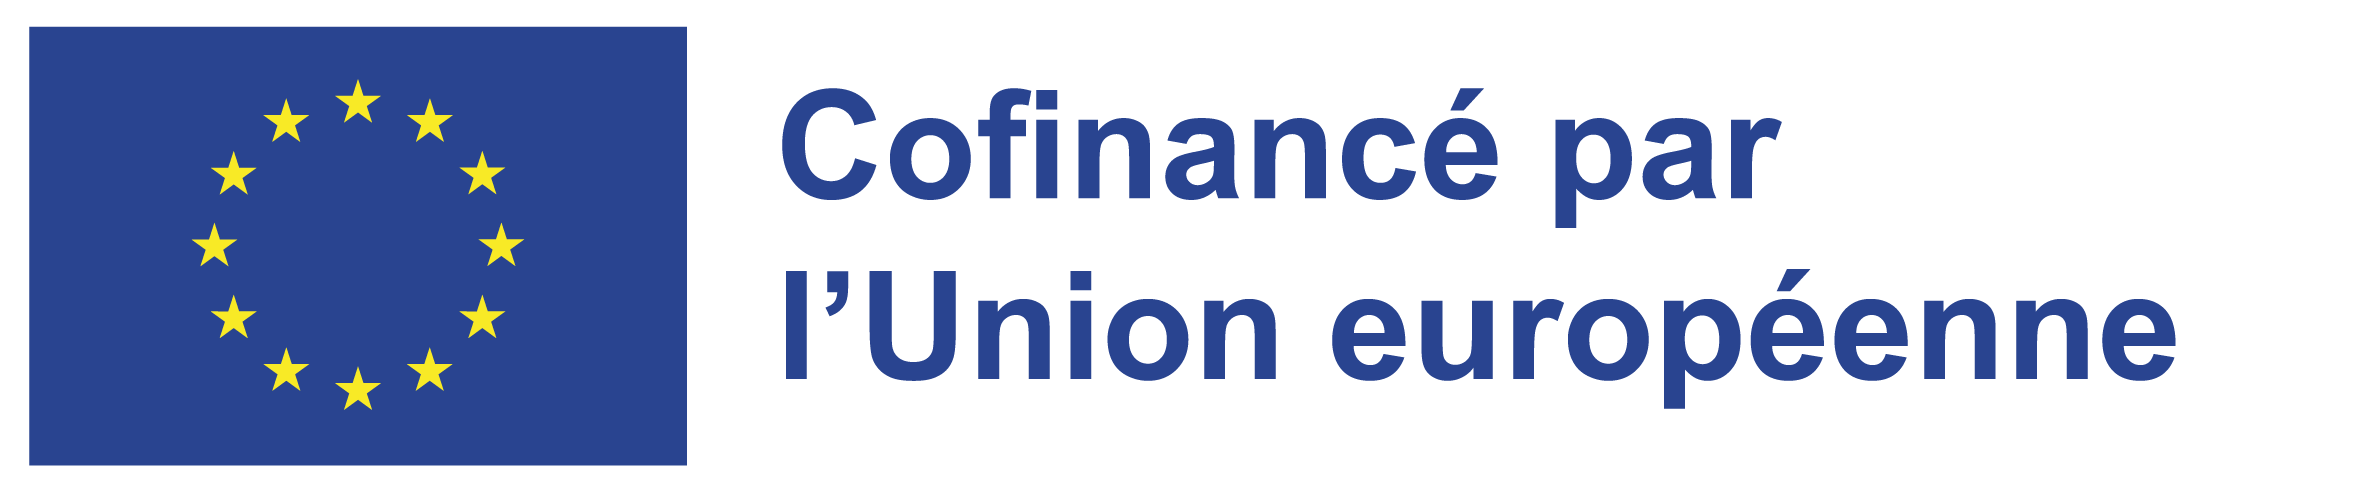 Cofinance par l'union européenne